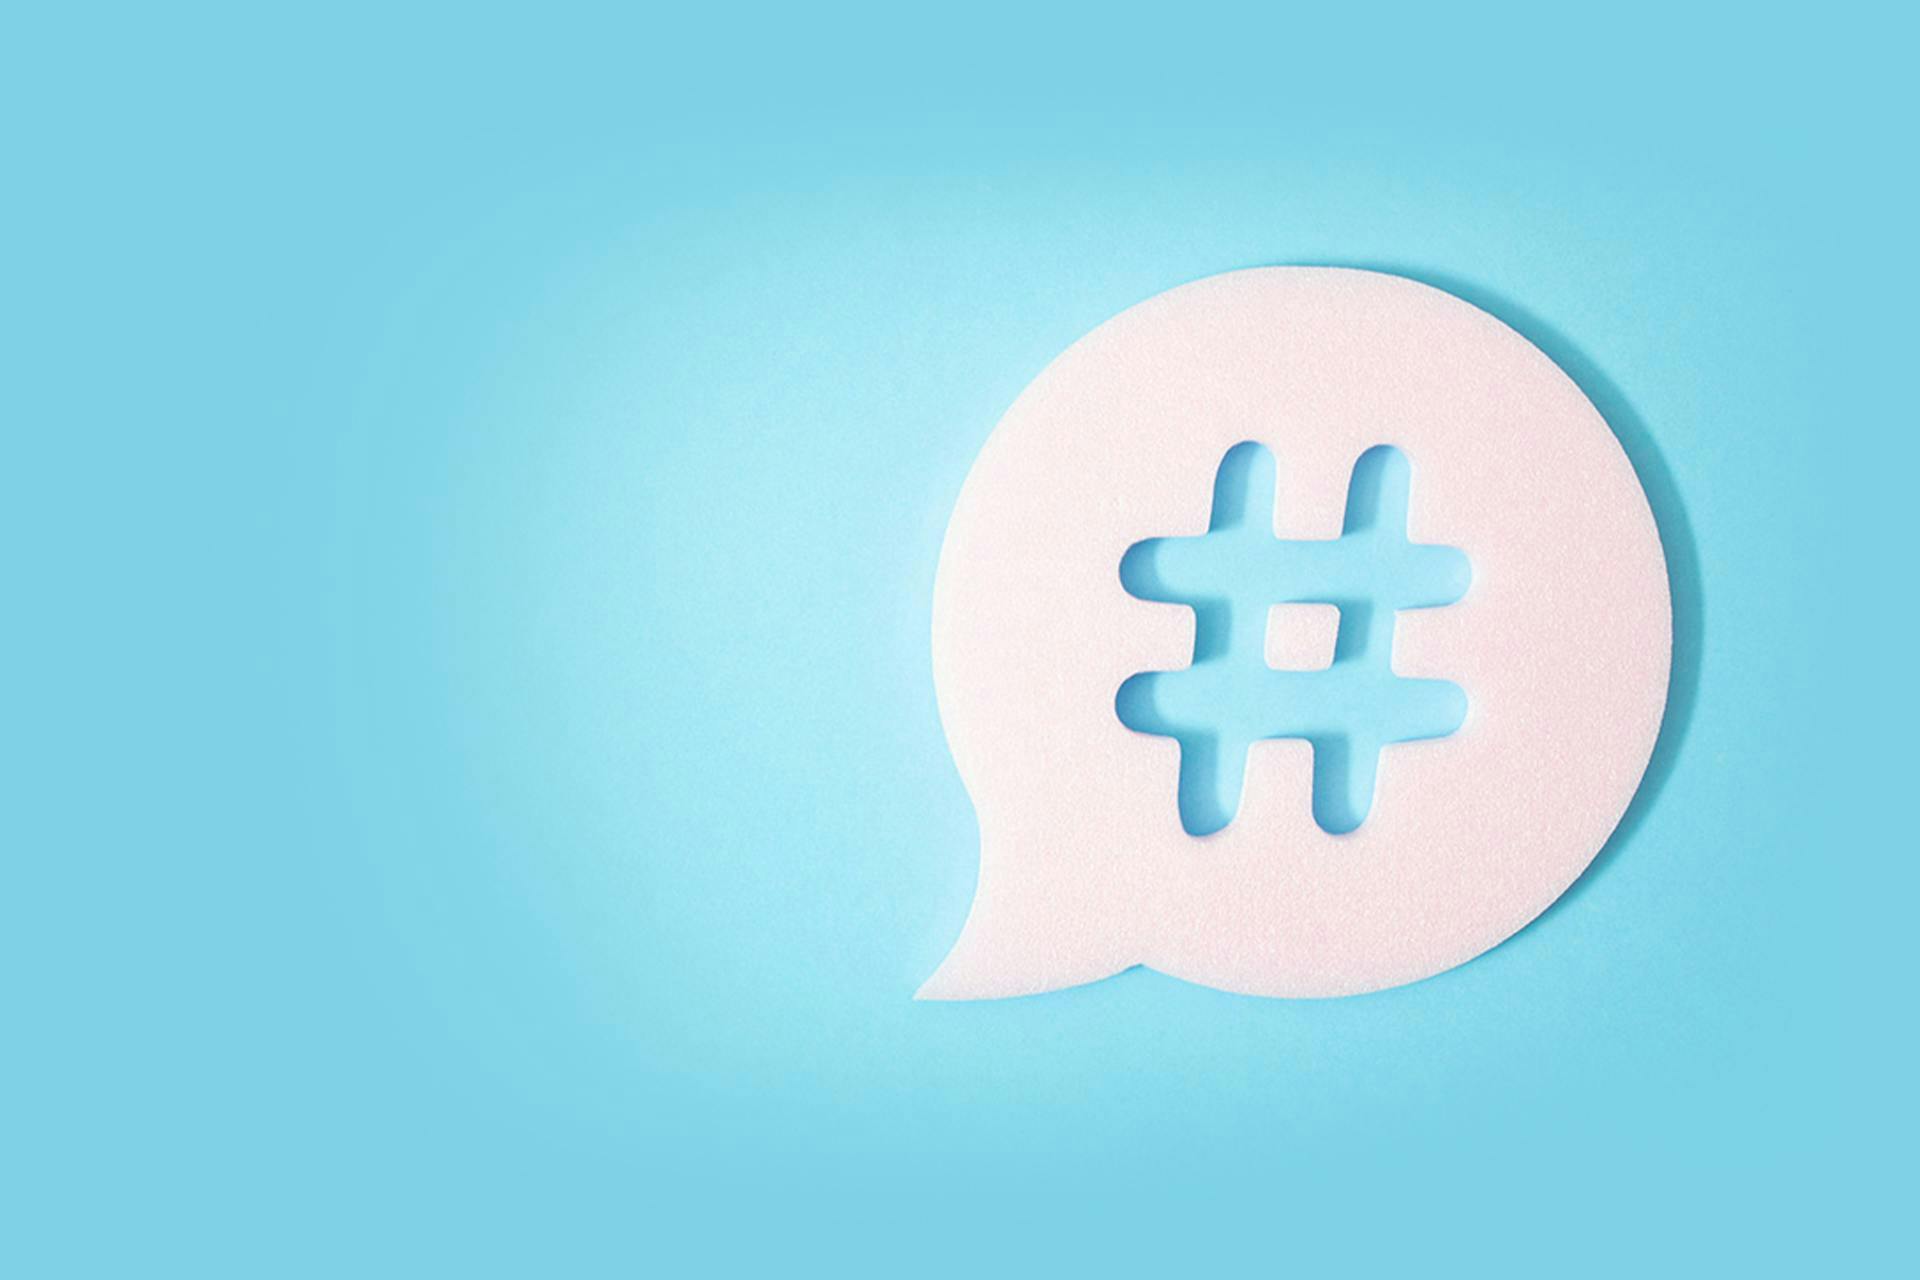 Une bulle blanche contenant un hashtag sur fond bleu clair